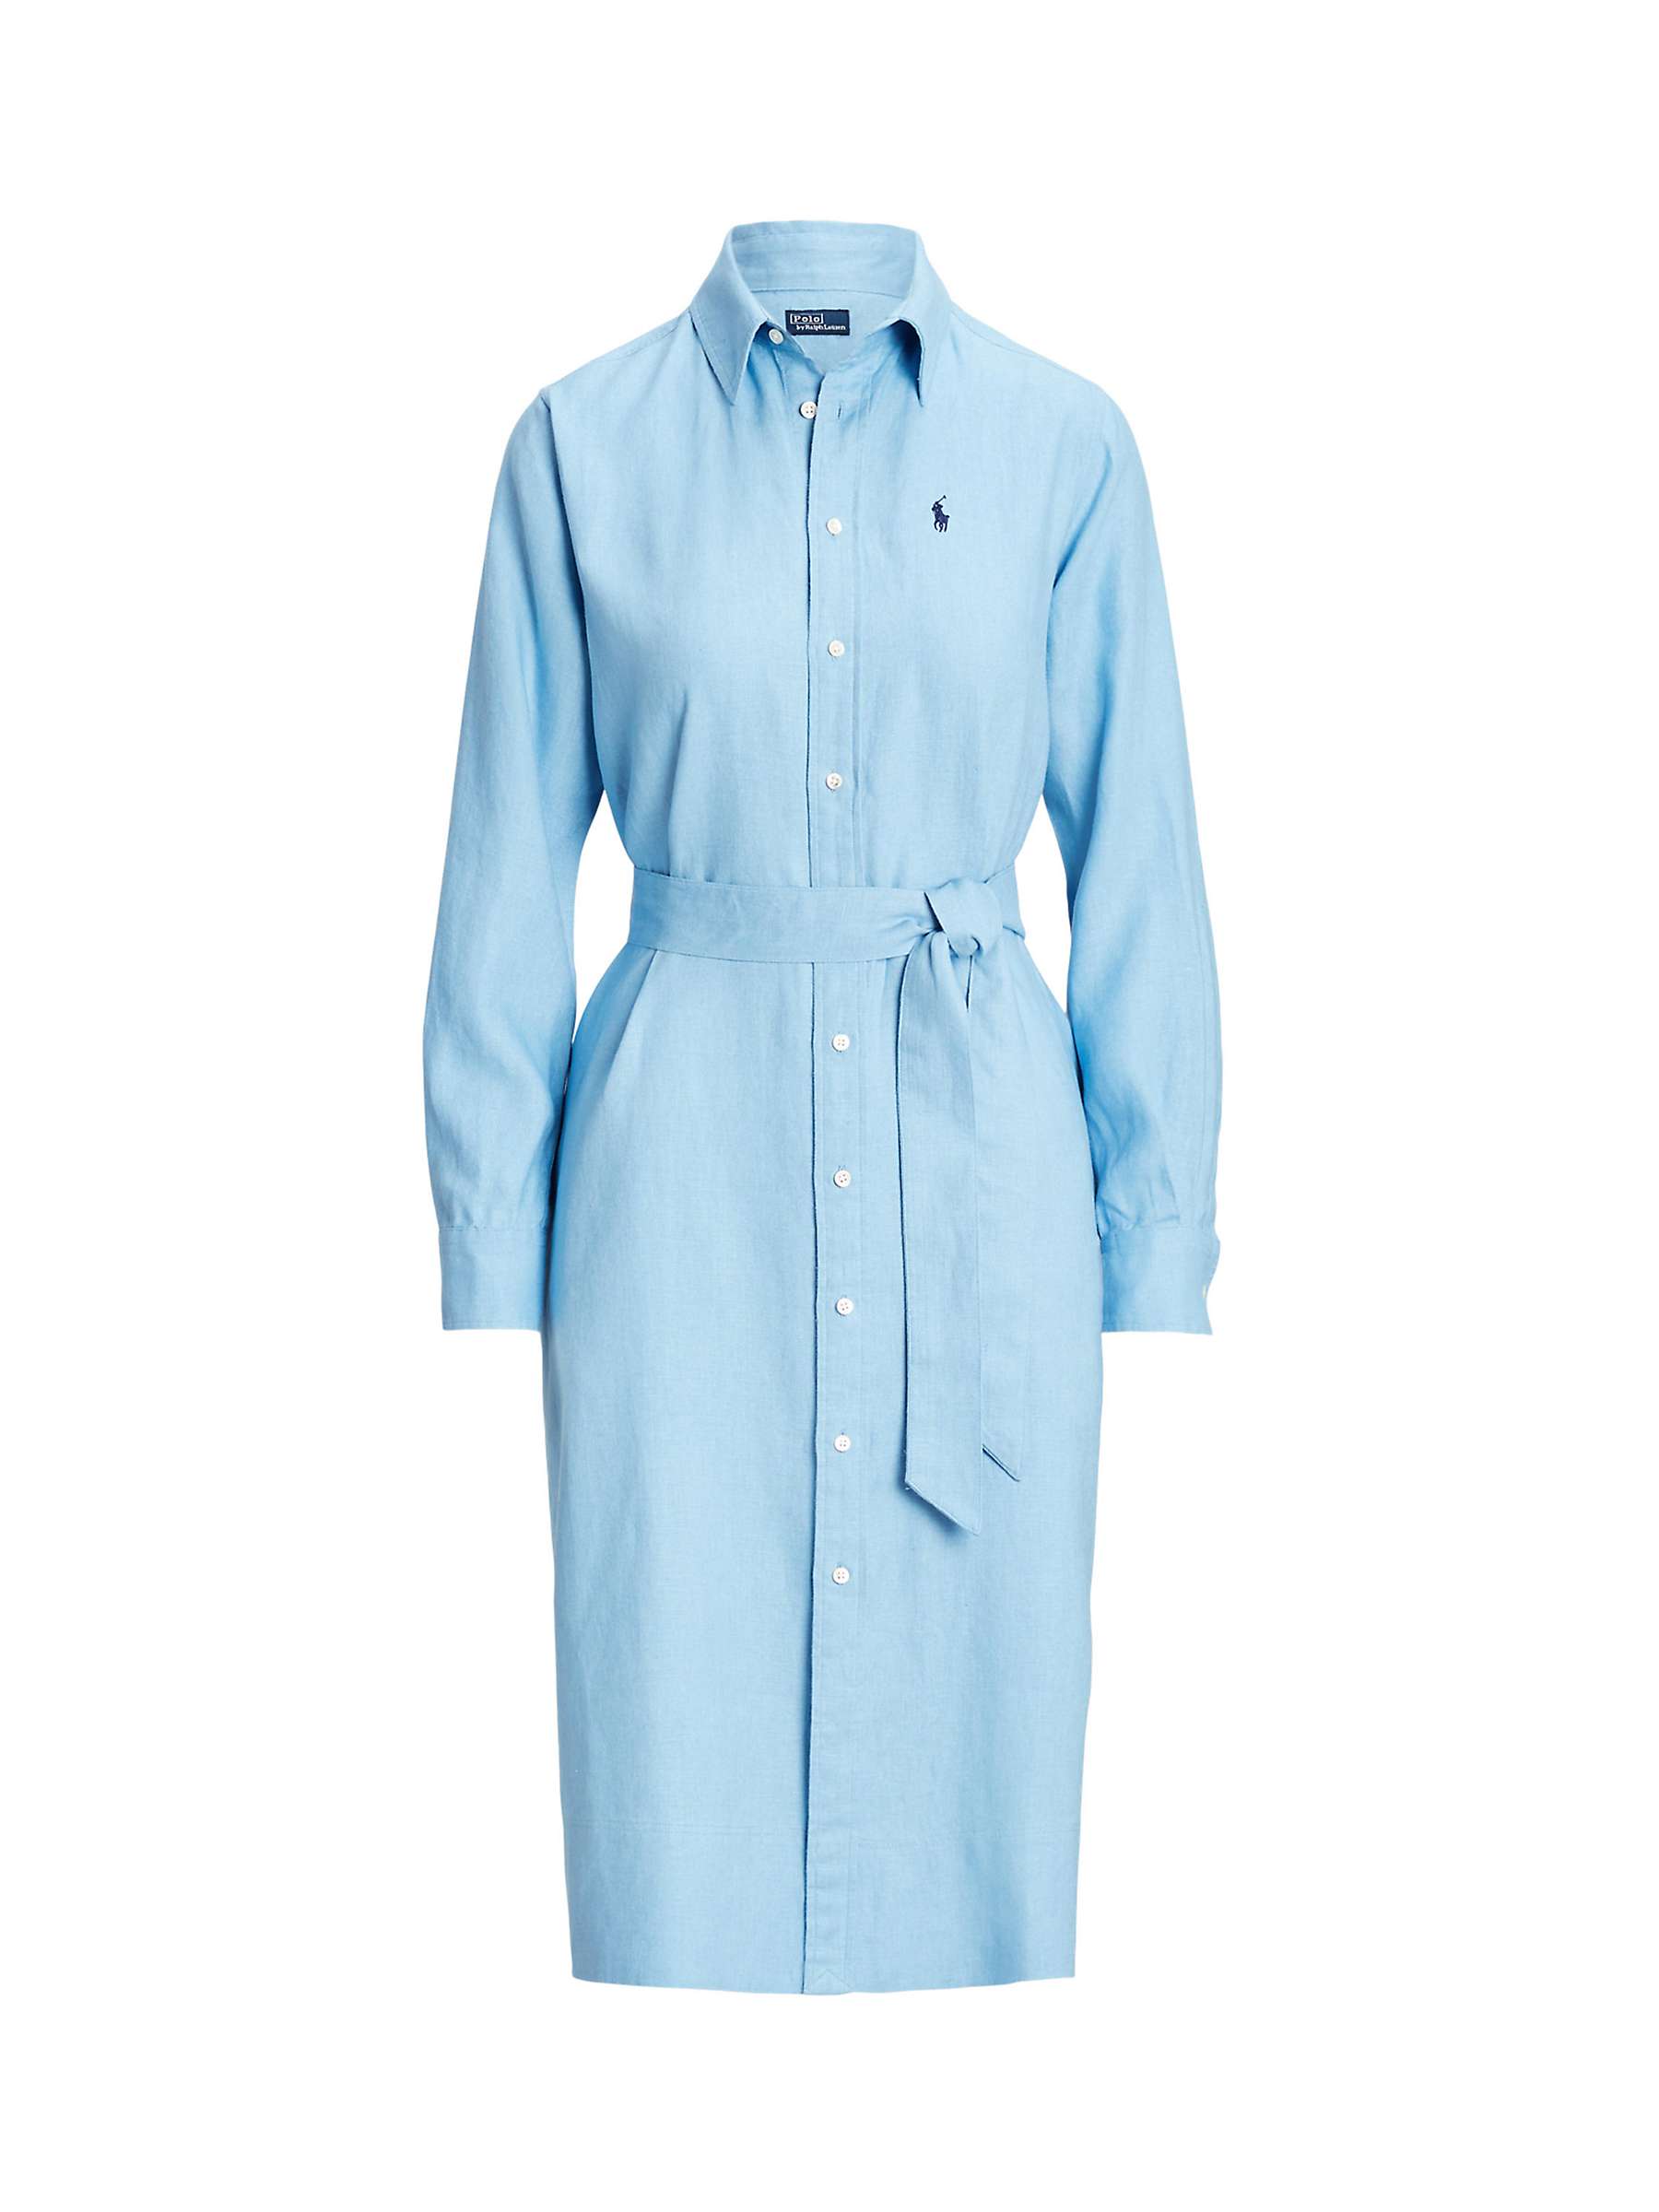 Buy Polo Ralph Lauren Linen Shirt Dress, Carolina Blue Online at johnlewis.com